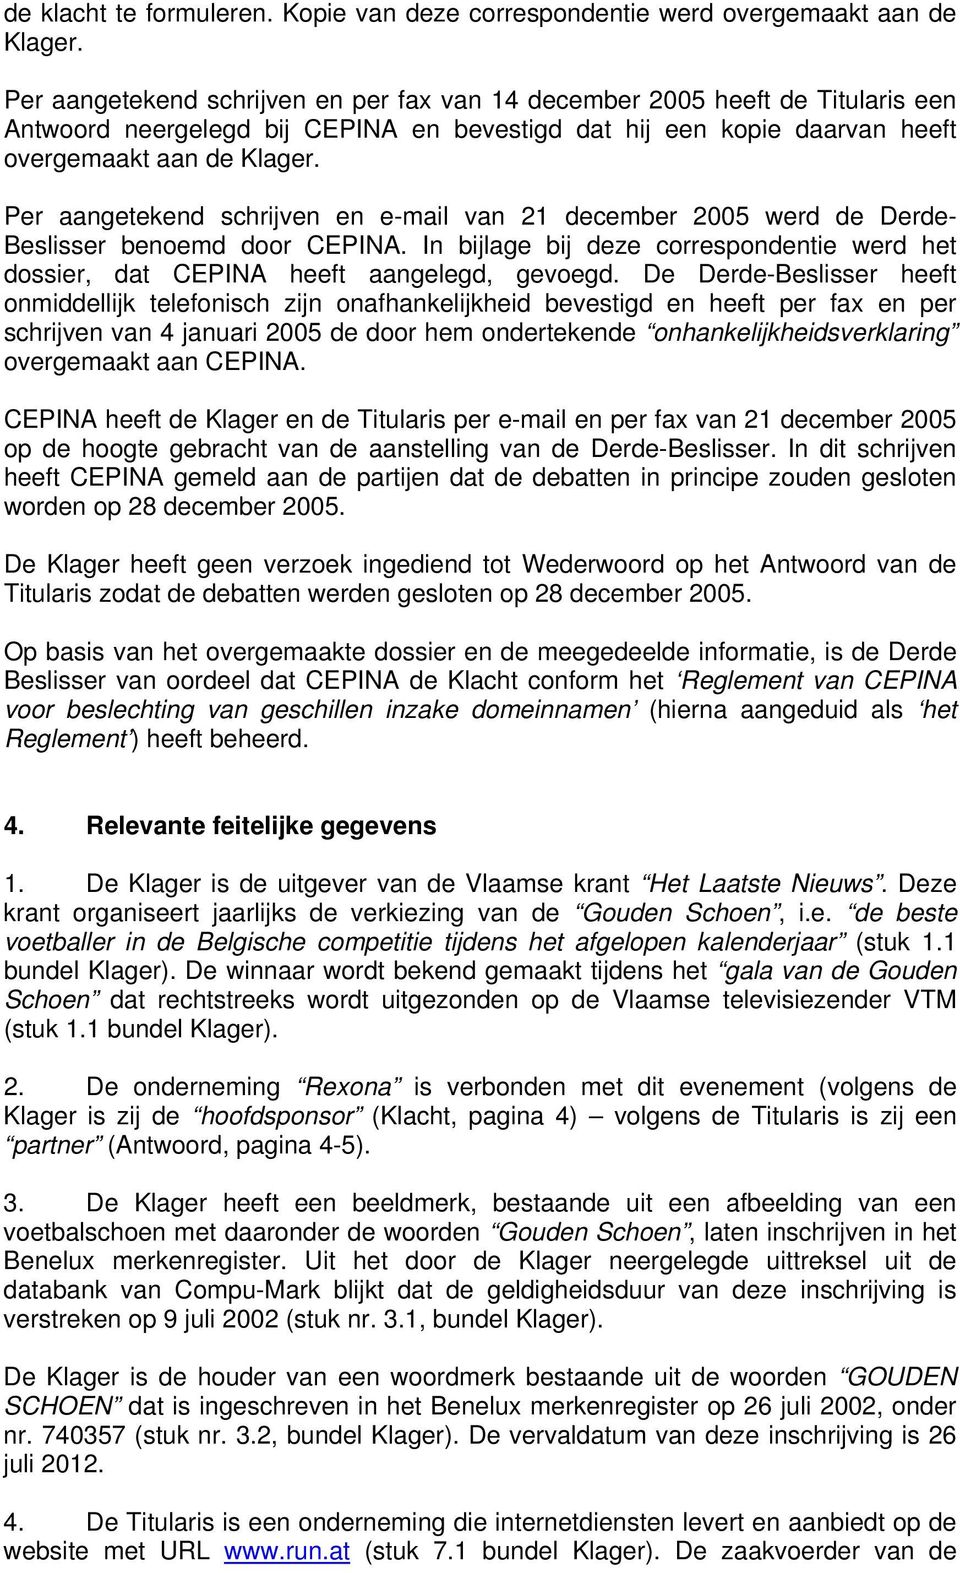 Per aangetekend schrijven en e-mail van 21 december 2005 werd de Derde- Beslisser benoemd door CEPINA. In bijlage bij deze correspondentie werd het dossier, dat CEPINA heeft aangelegd, gevoegd.